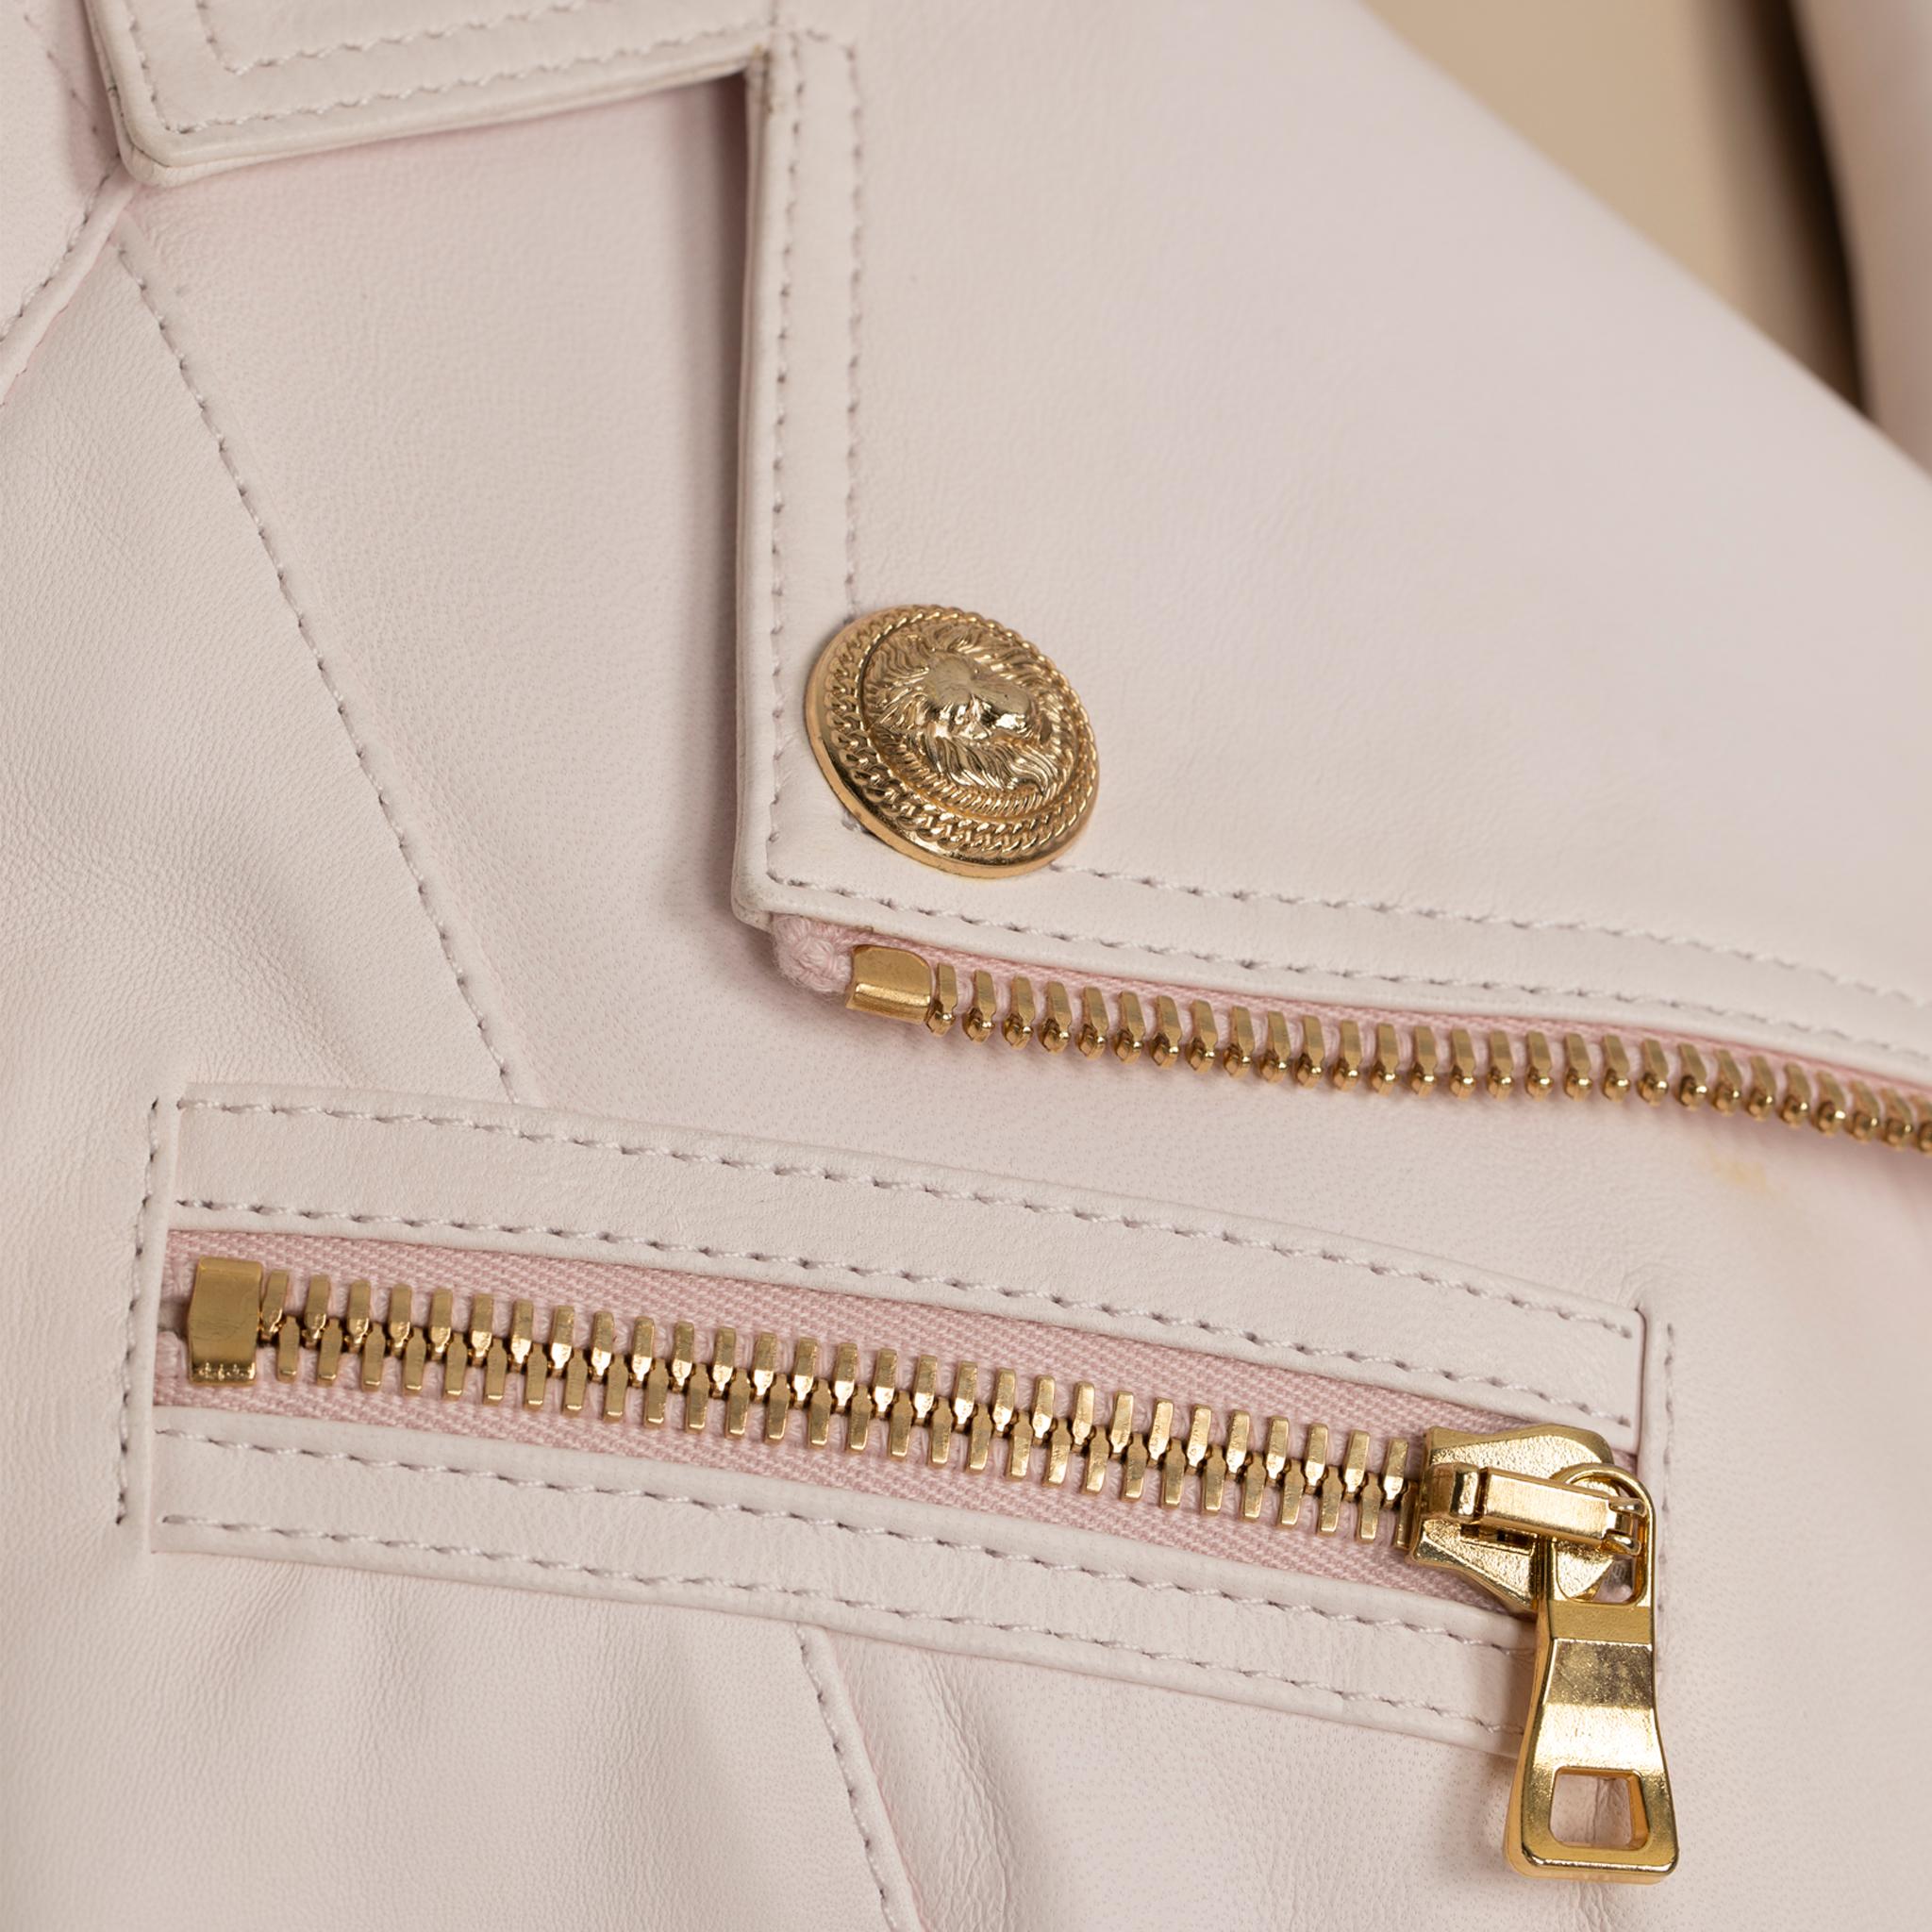 Die Balmain Pale Pink Leather Biker Jacket 44 FR ist aus geschmeidigem, blassrosa Lammleder gefertigt und zeigt sich in einer von Bikern inspirierten Silhouette. Perfekt für einen modischen Look.

Marke:

Balmain

Produkt:

Biker-Jacke

Größe:

40